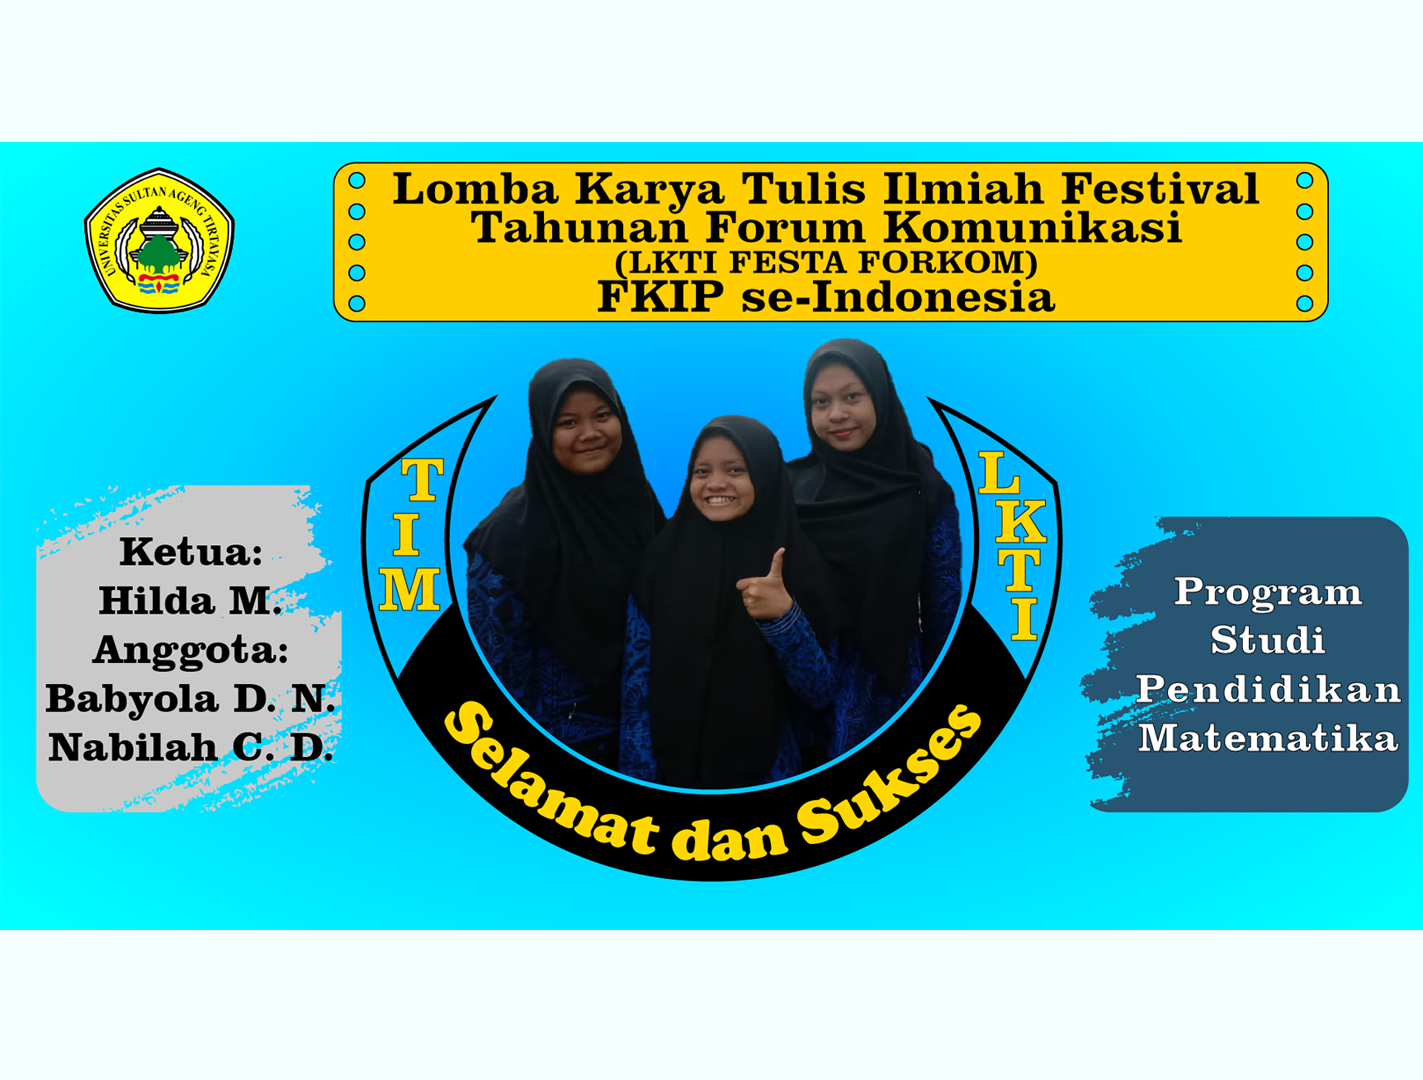 Mahasisiswa Pendidikan Matematika Meraih peringkat 6 Lomba Karya Tulis Ilmiah Festival Tahunan Forum Komunikasi (LKTI FESTA FORKOM) FKIP Se-Indonesia